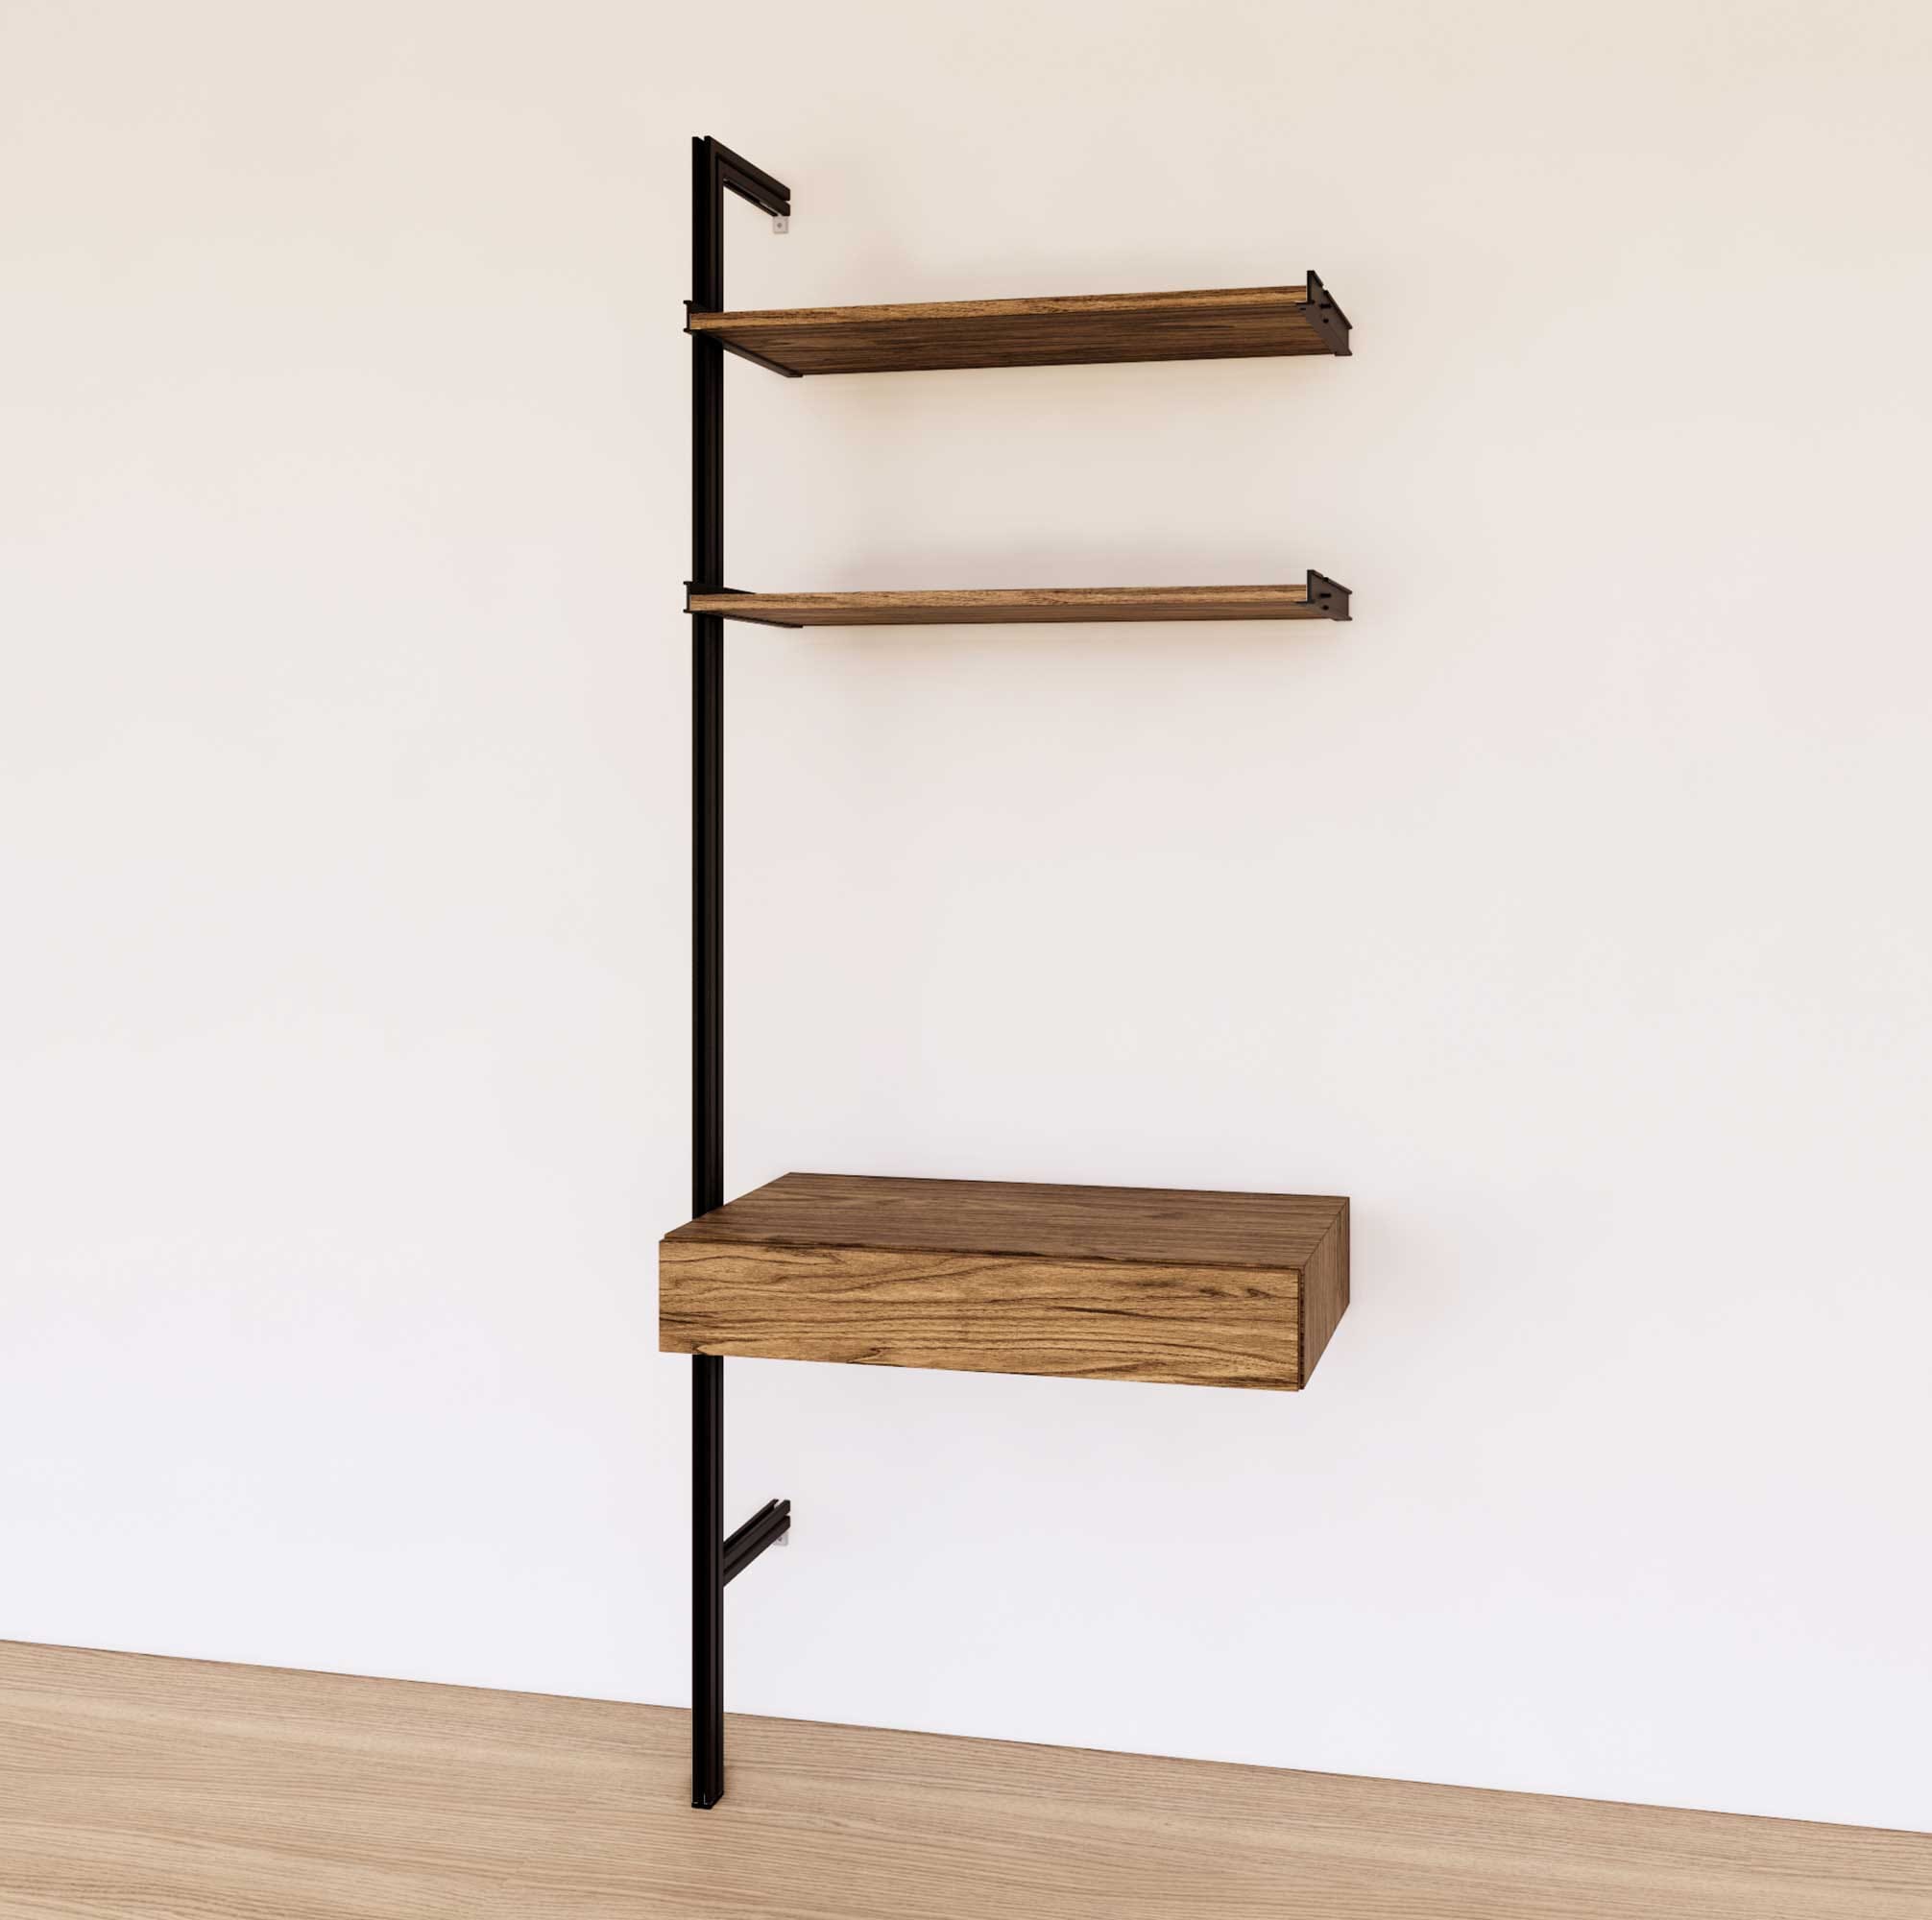 31 Desk Option with Shelves – Modern Shelving